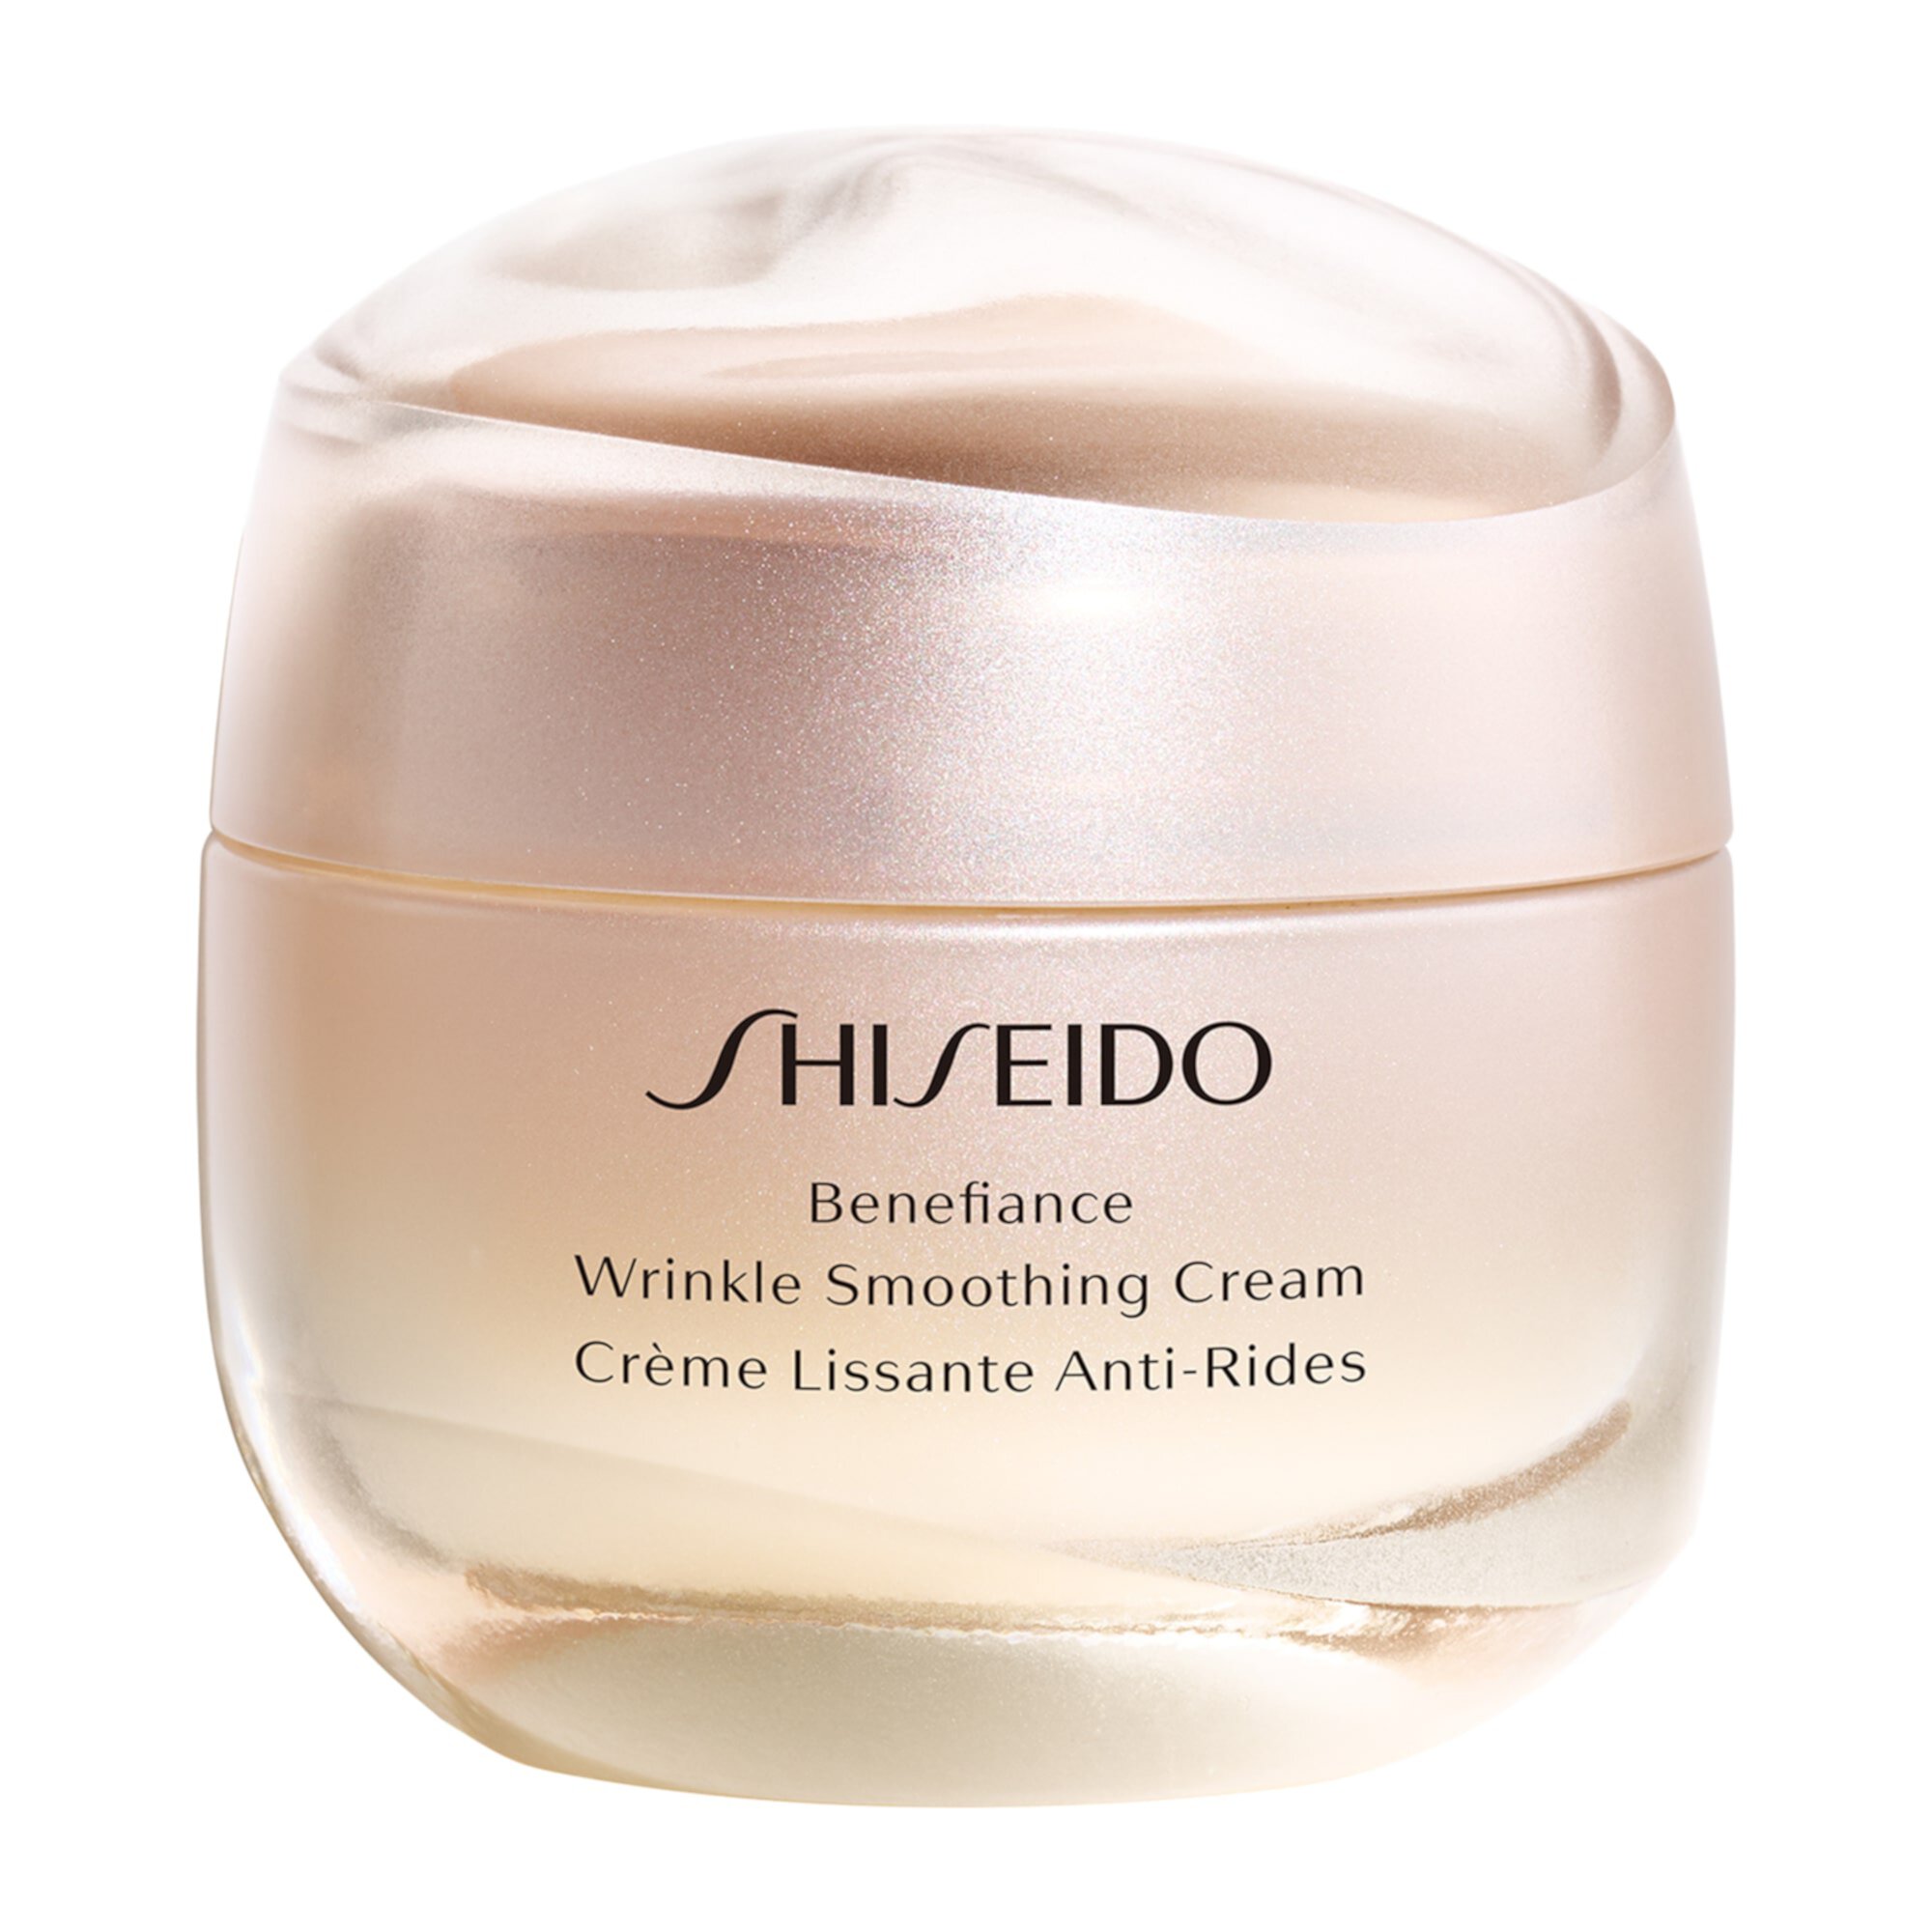 Крем для разглаживания морщин Benefiance Shiseido